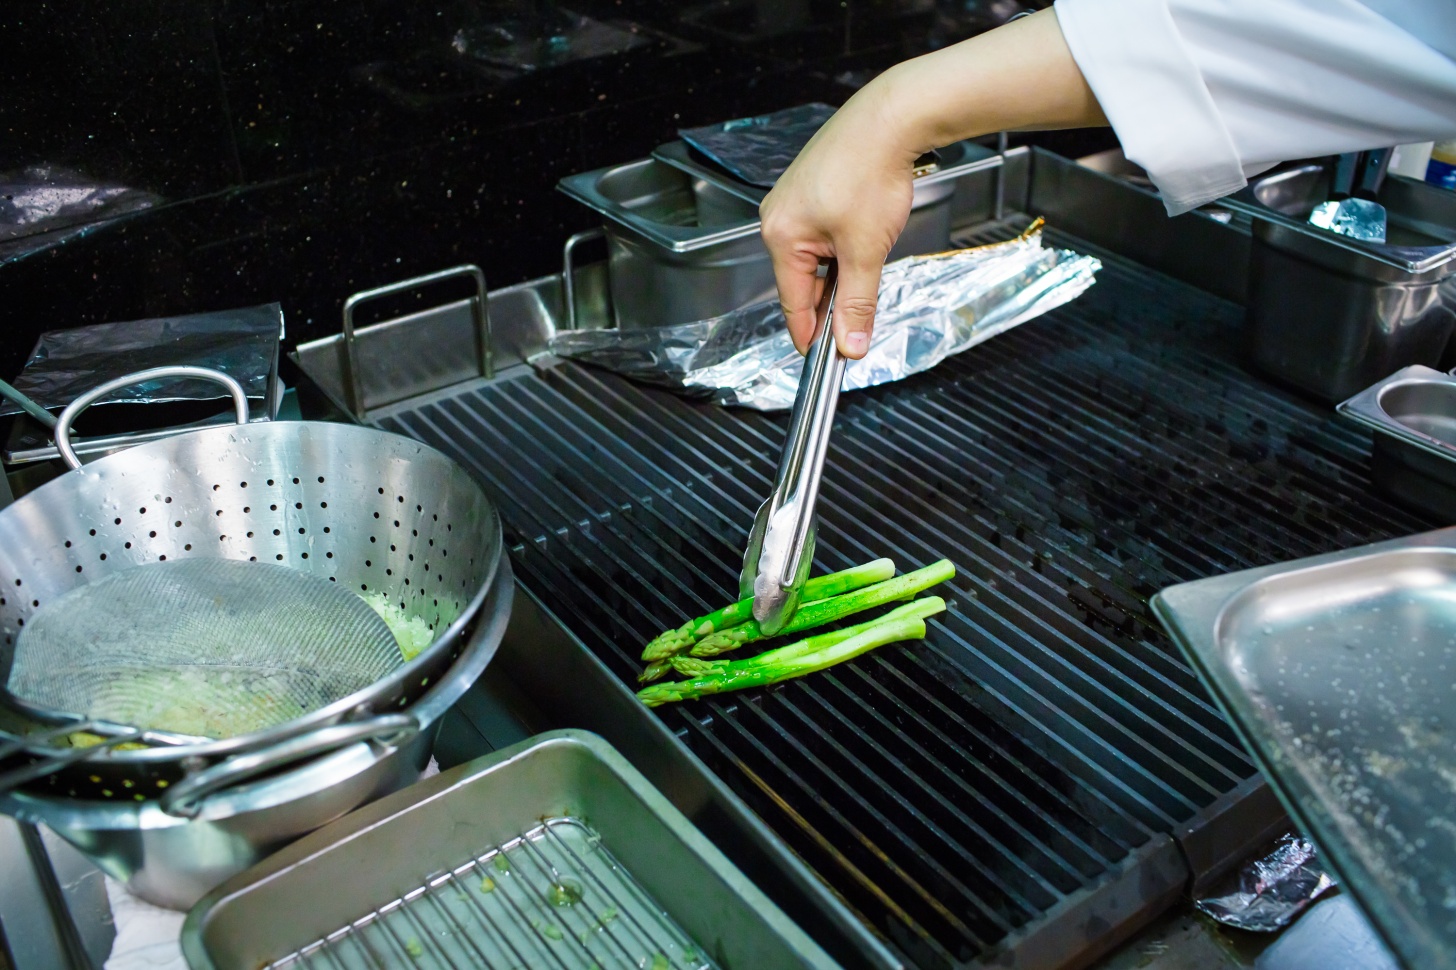 Спаржа с луково-перечной сальсой от шеф-повара ресторана Nobu - фотография № 7